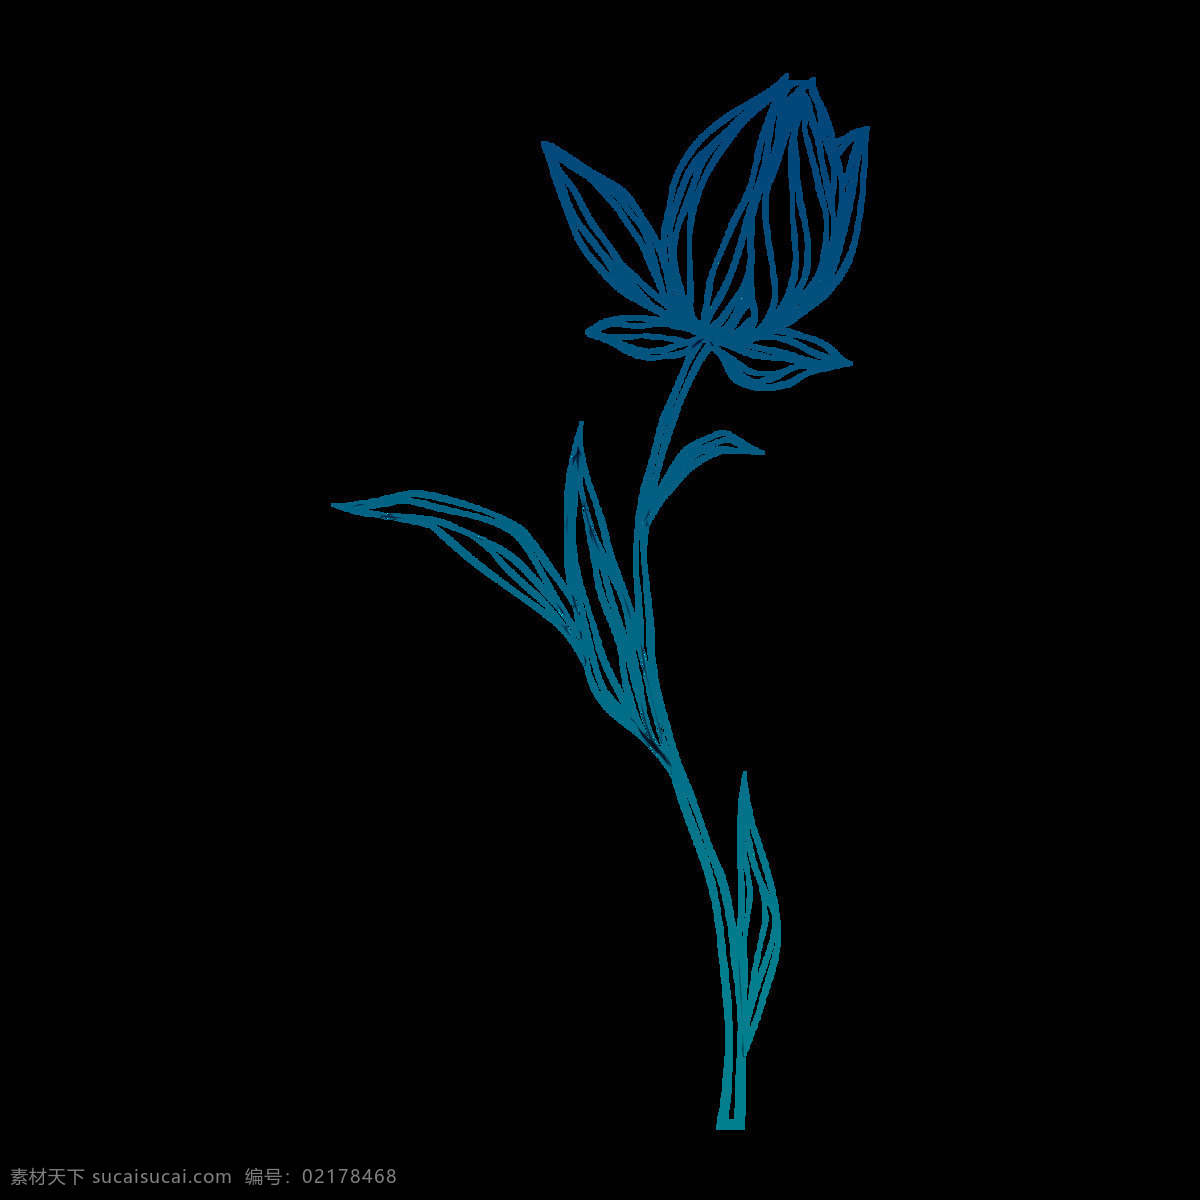 蓝色 线描 荷花 元素 壁画 边框素材 抽象艺术 创意素材 花草图案 花朵图案 花卉 花卉元素 花纹图案 时尚图案 手绘花朵 手绘图案 水彩图案 中国风